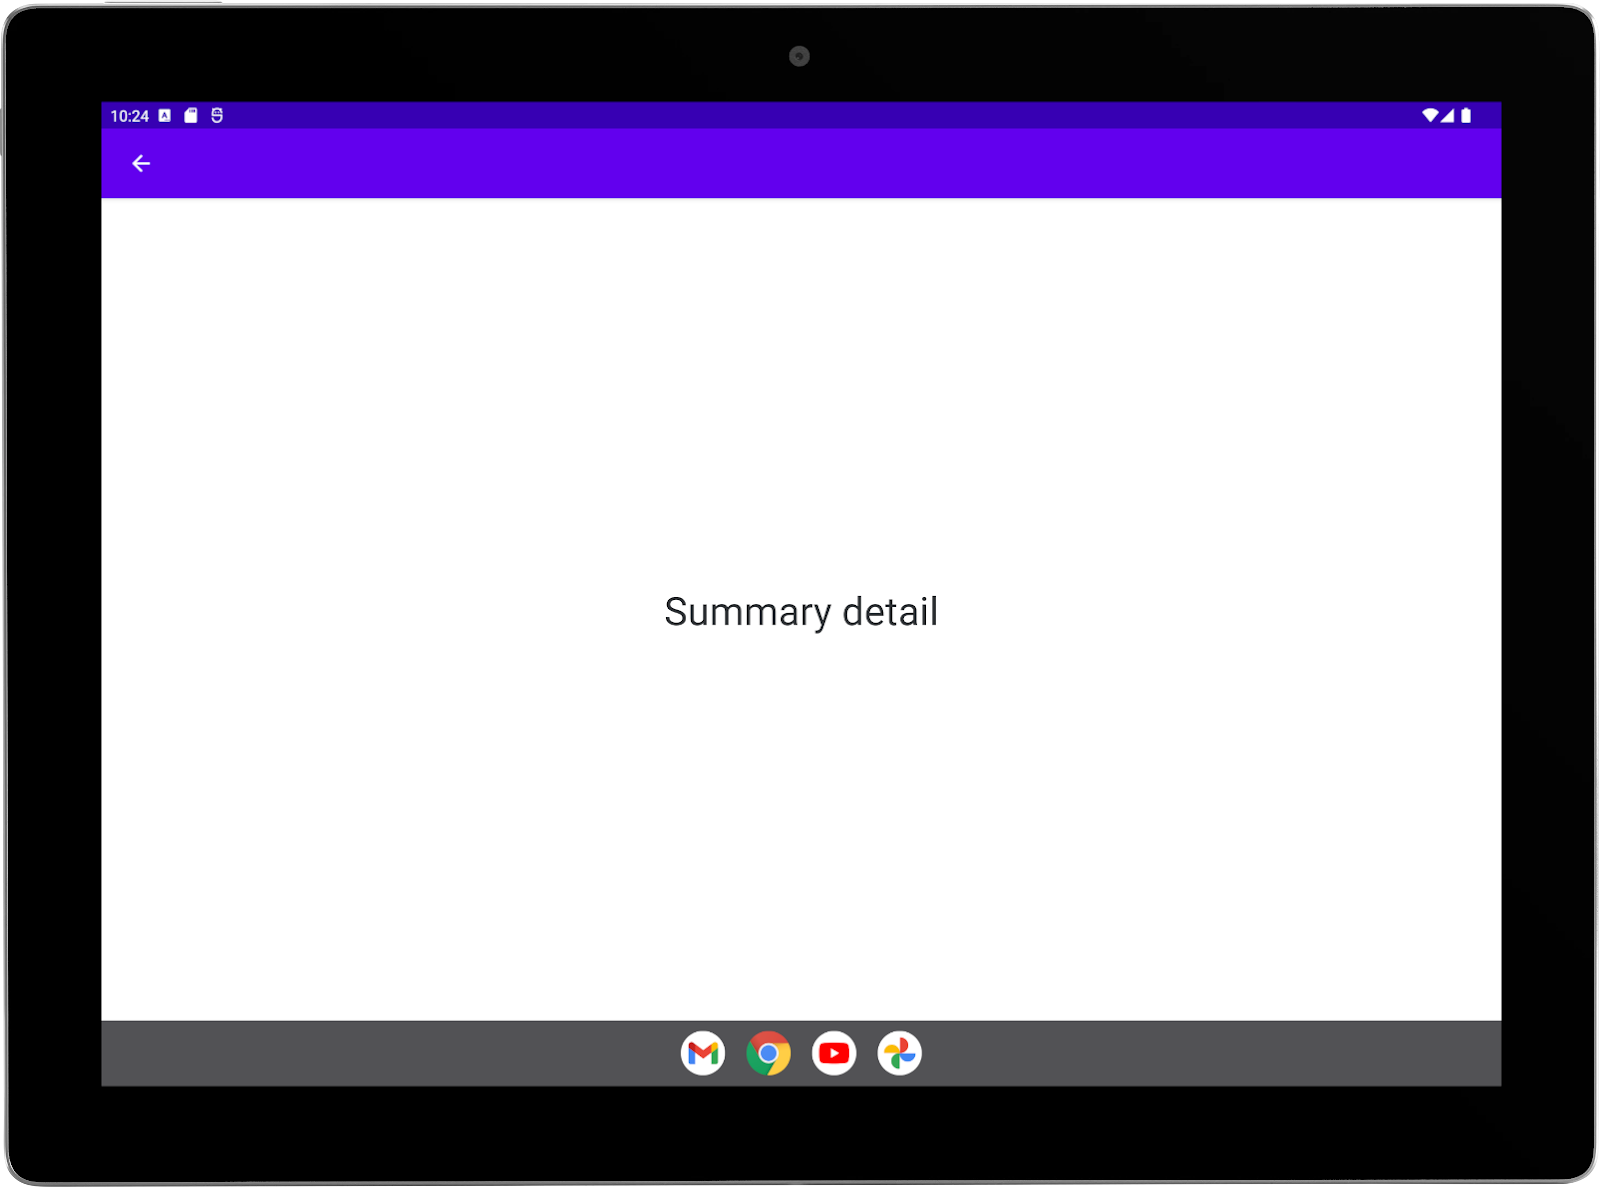 Grande tablette avec une application exemple exécutée en mode paysage Activité "Summary" (Résumé) en plein écran